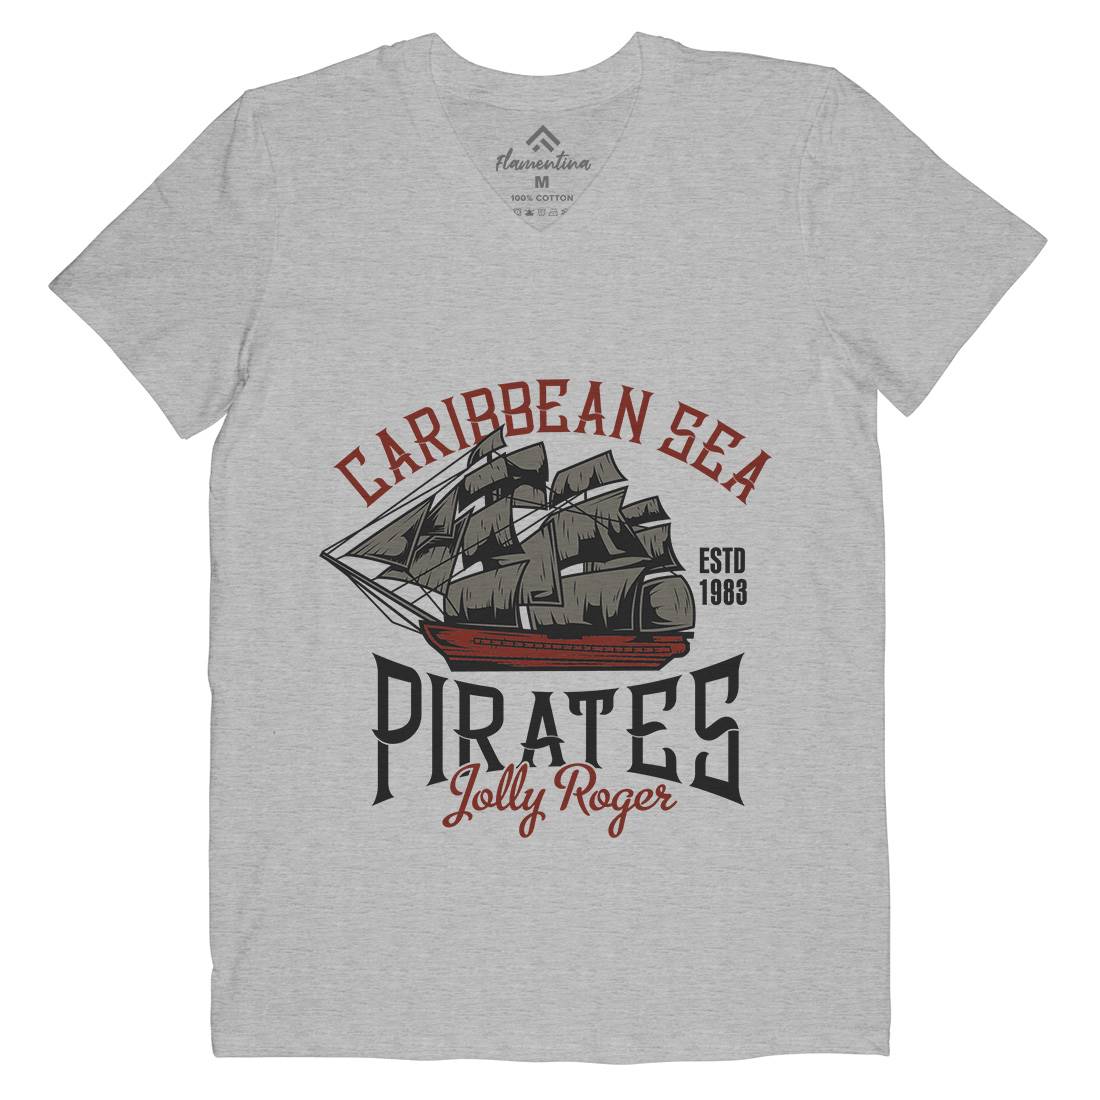 Pirate Mens Organic V-Neck T-Shirt Navy B157